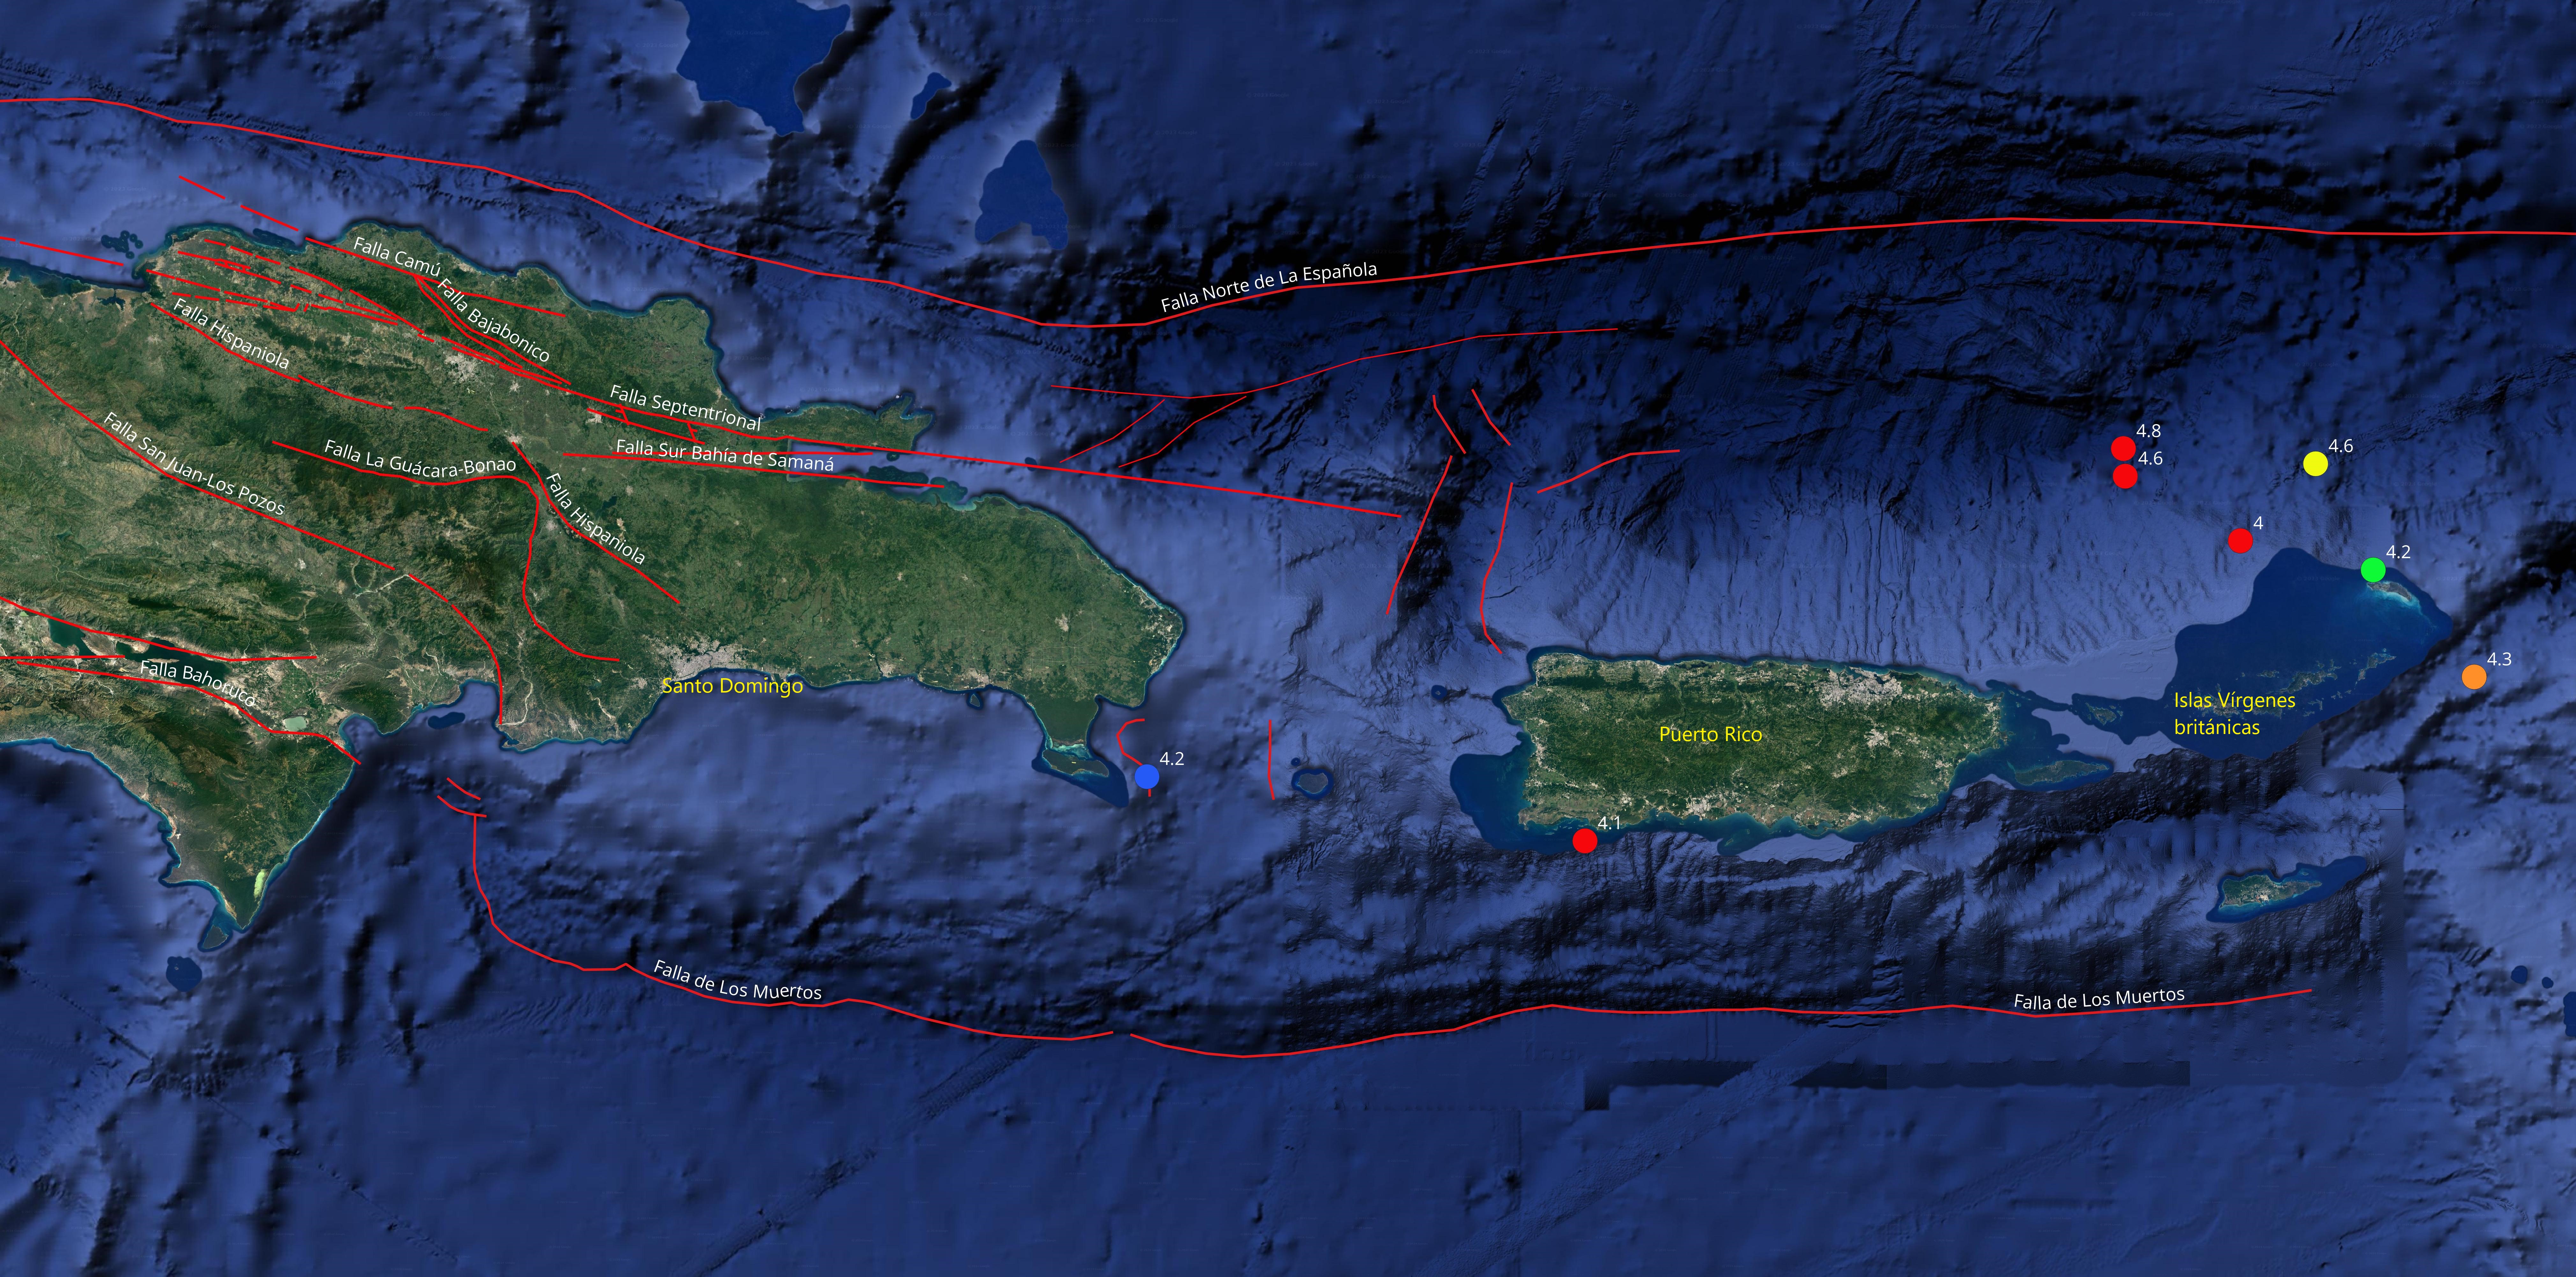 Figura 2: Mapa del noreste del Caribe mostrando los eventos sísmicos con magnitudes superiores a 4.0